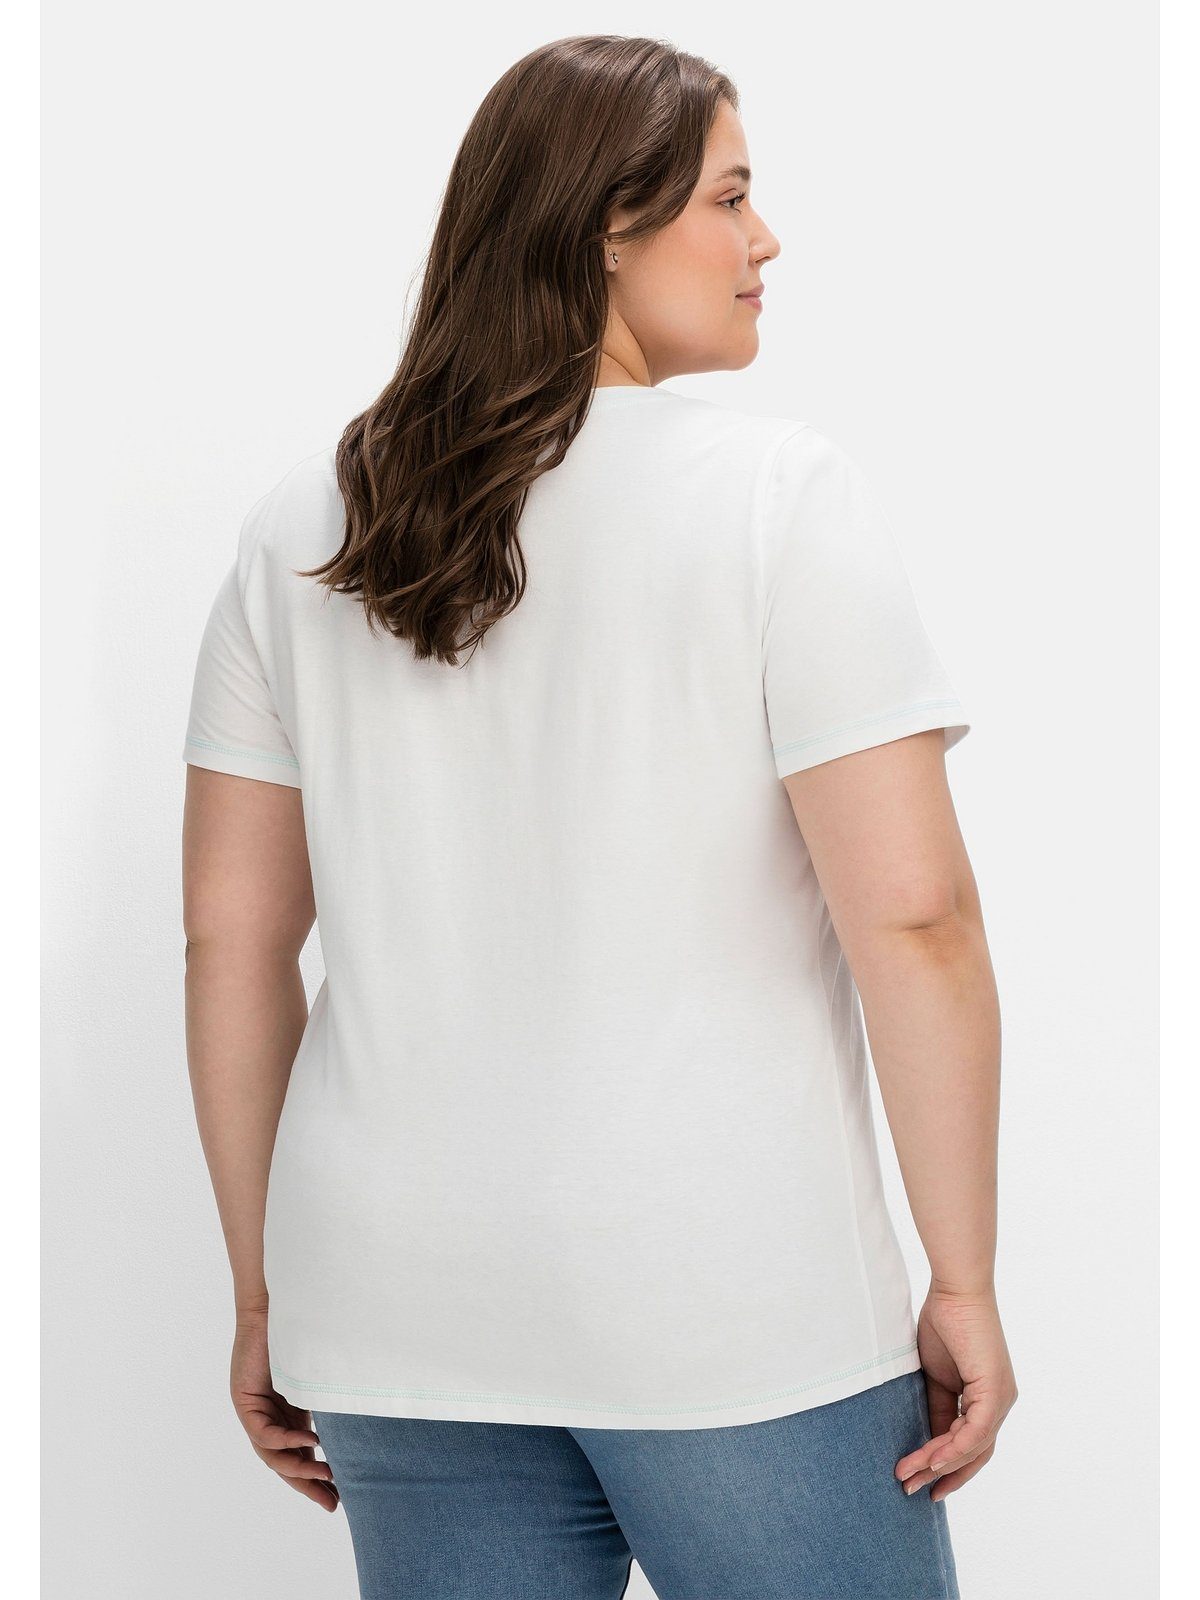 leicht Wordingprint, weiß T-Shirt tailliert Große Sheego bedruckt mit Größen